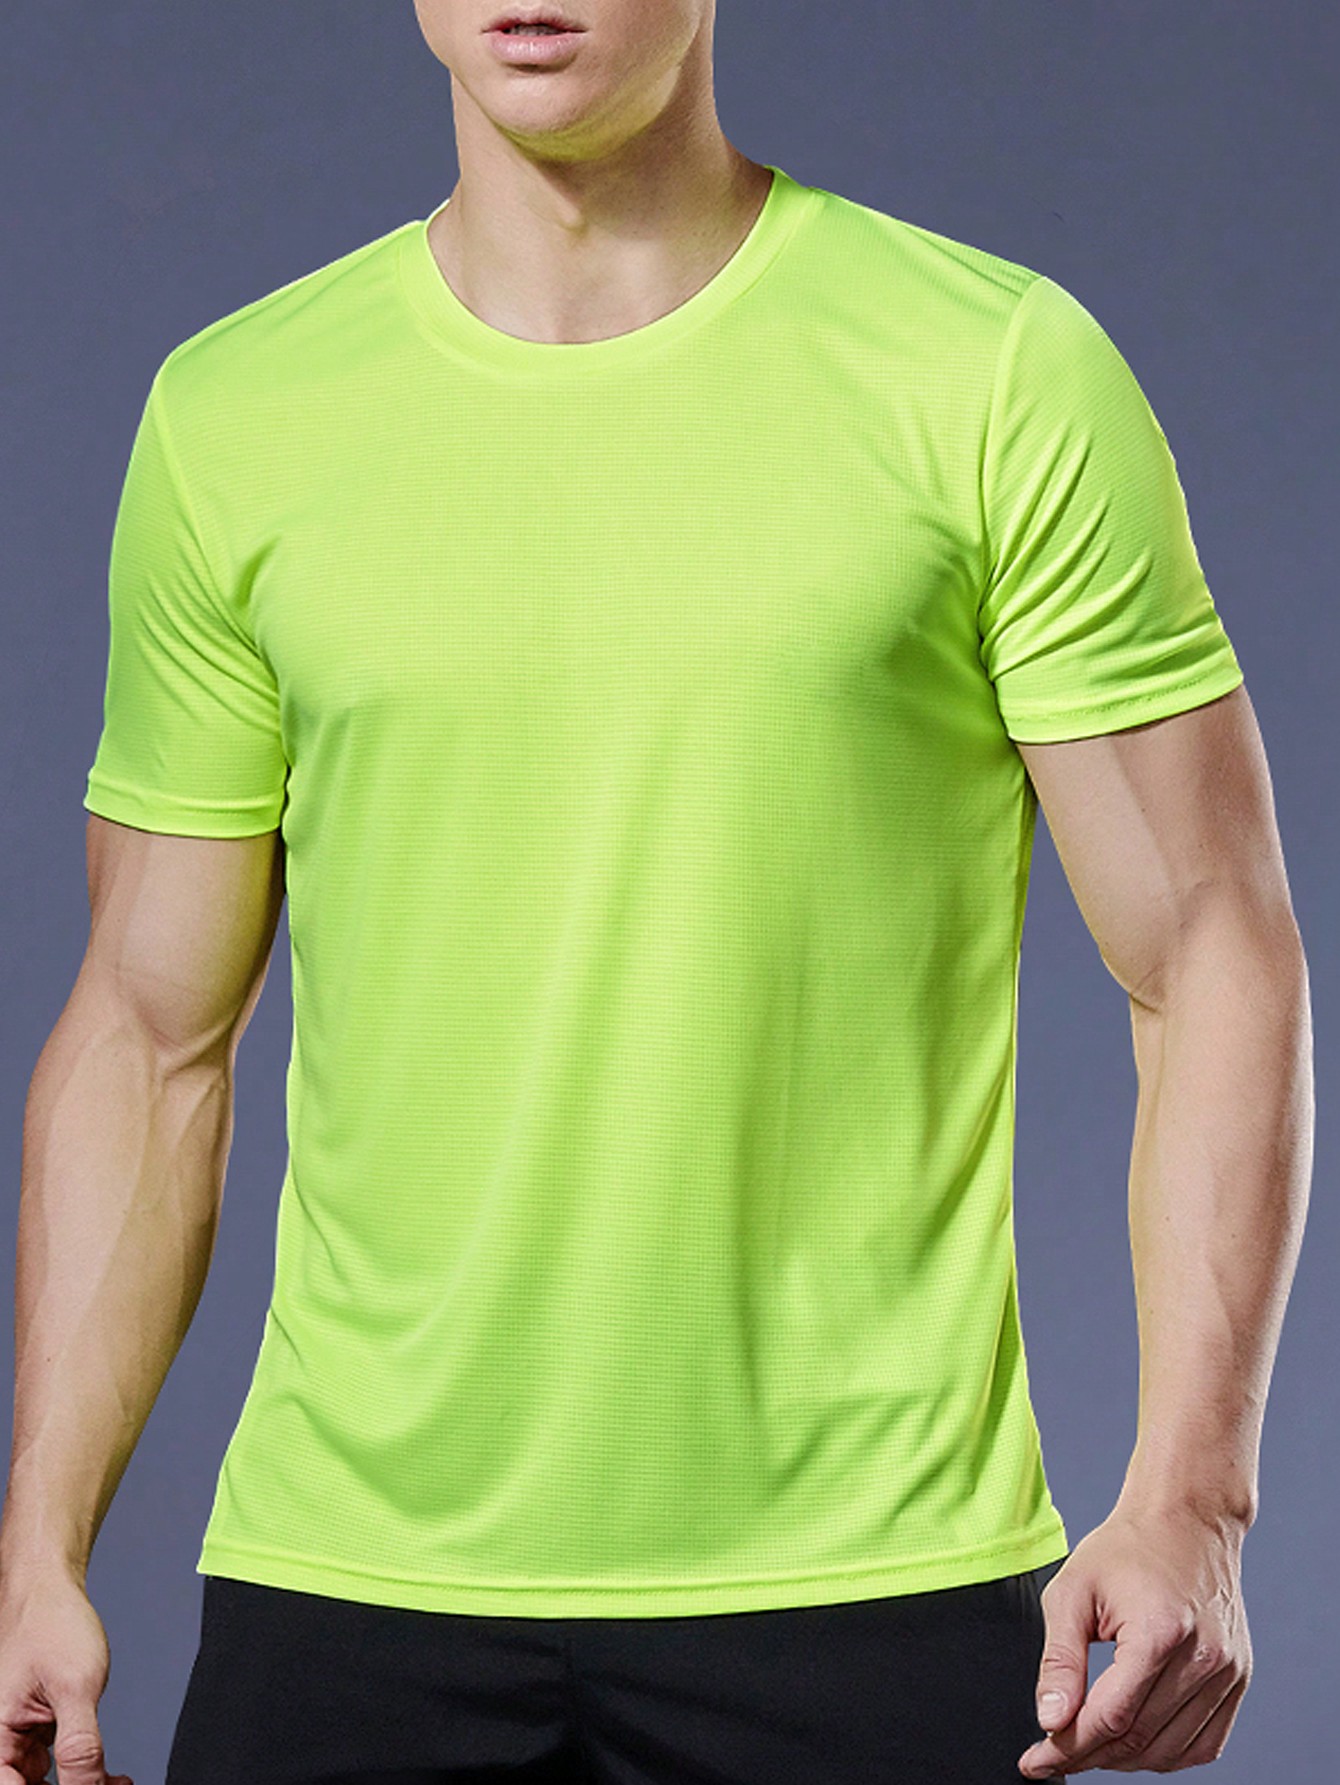 2 шт. комплект свободных футболок с короткими рукавами для тренировок и бега для мужчин, зеленый